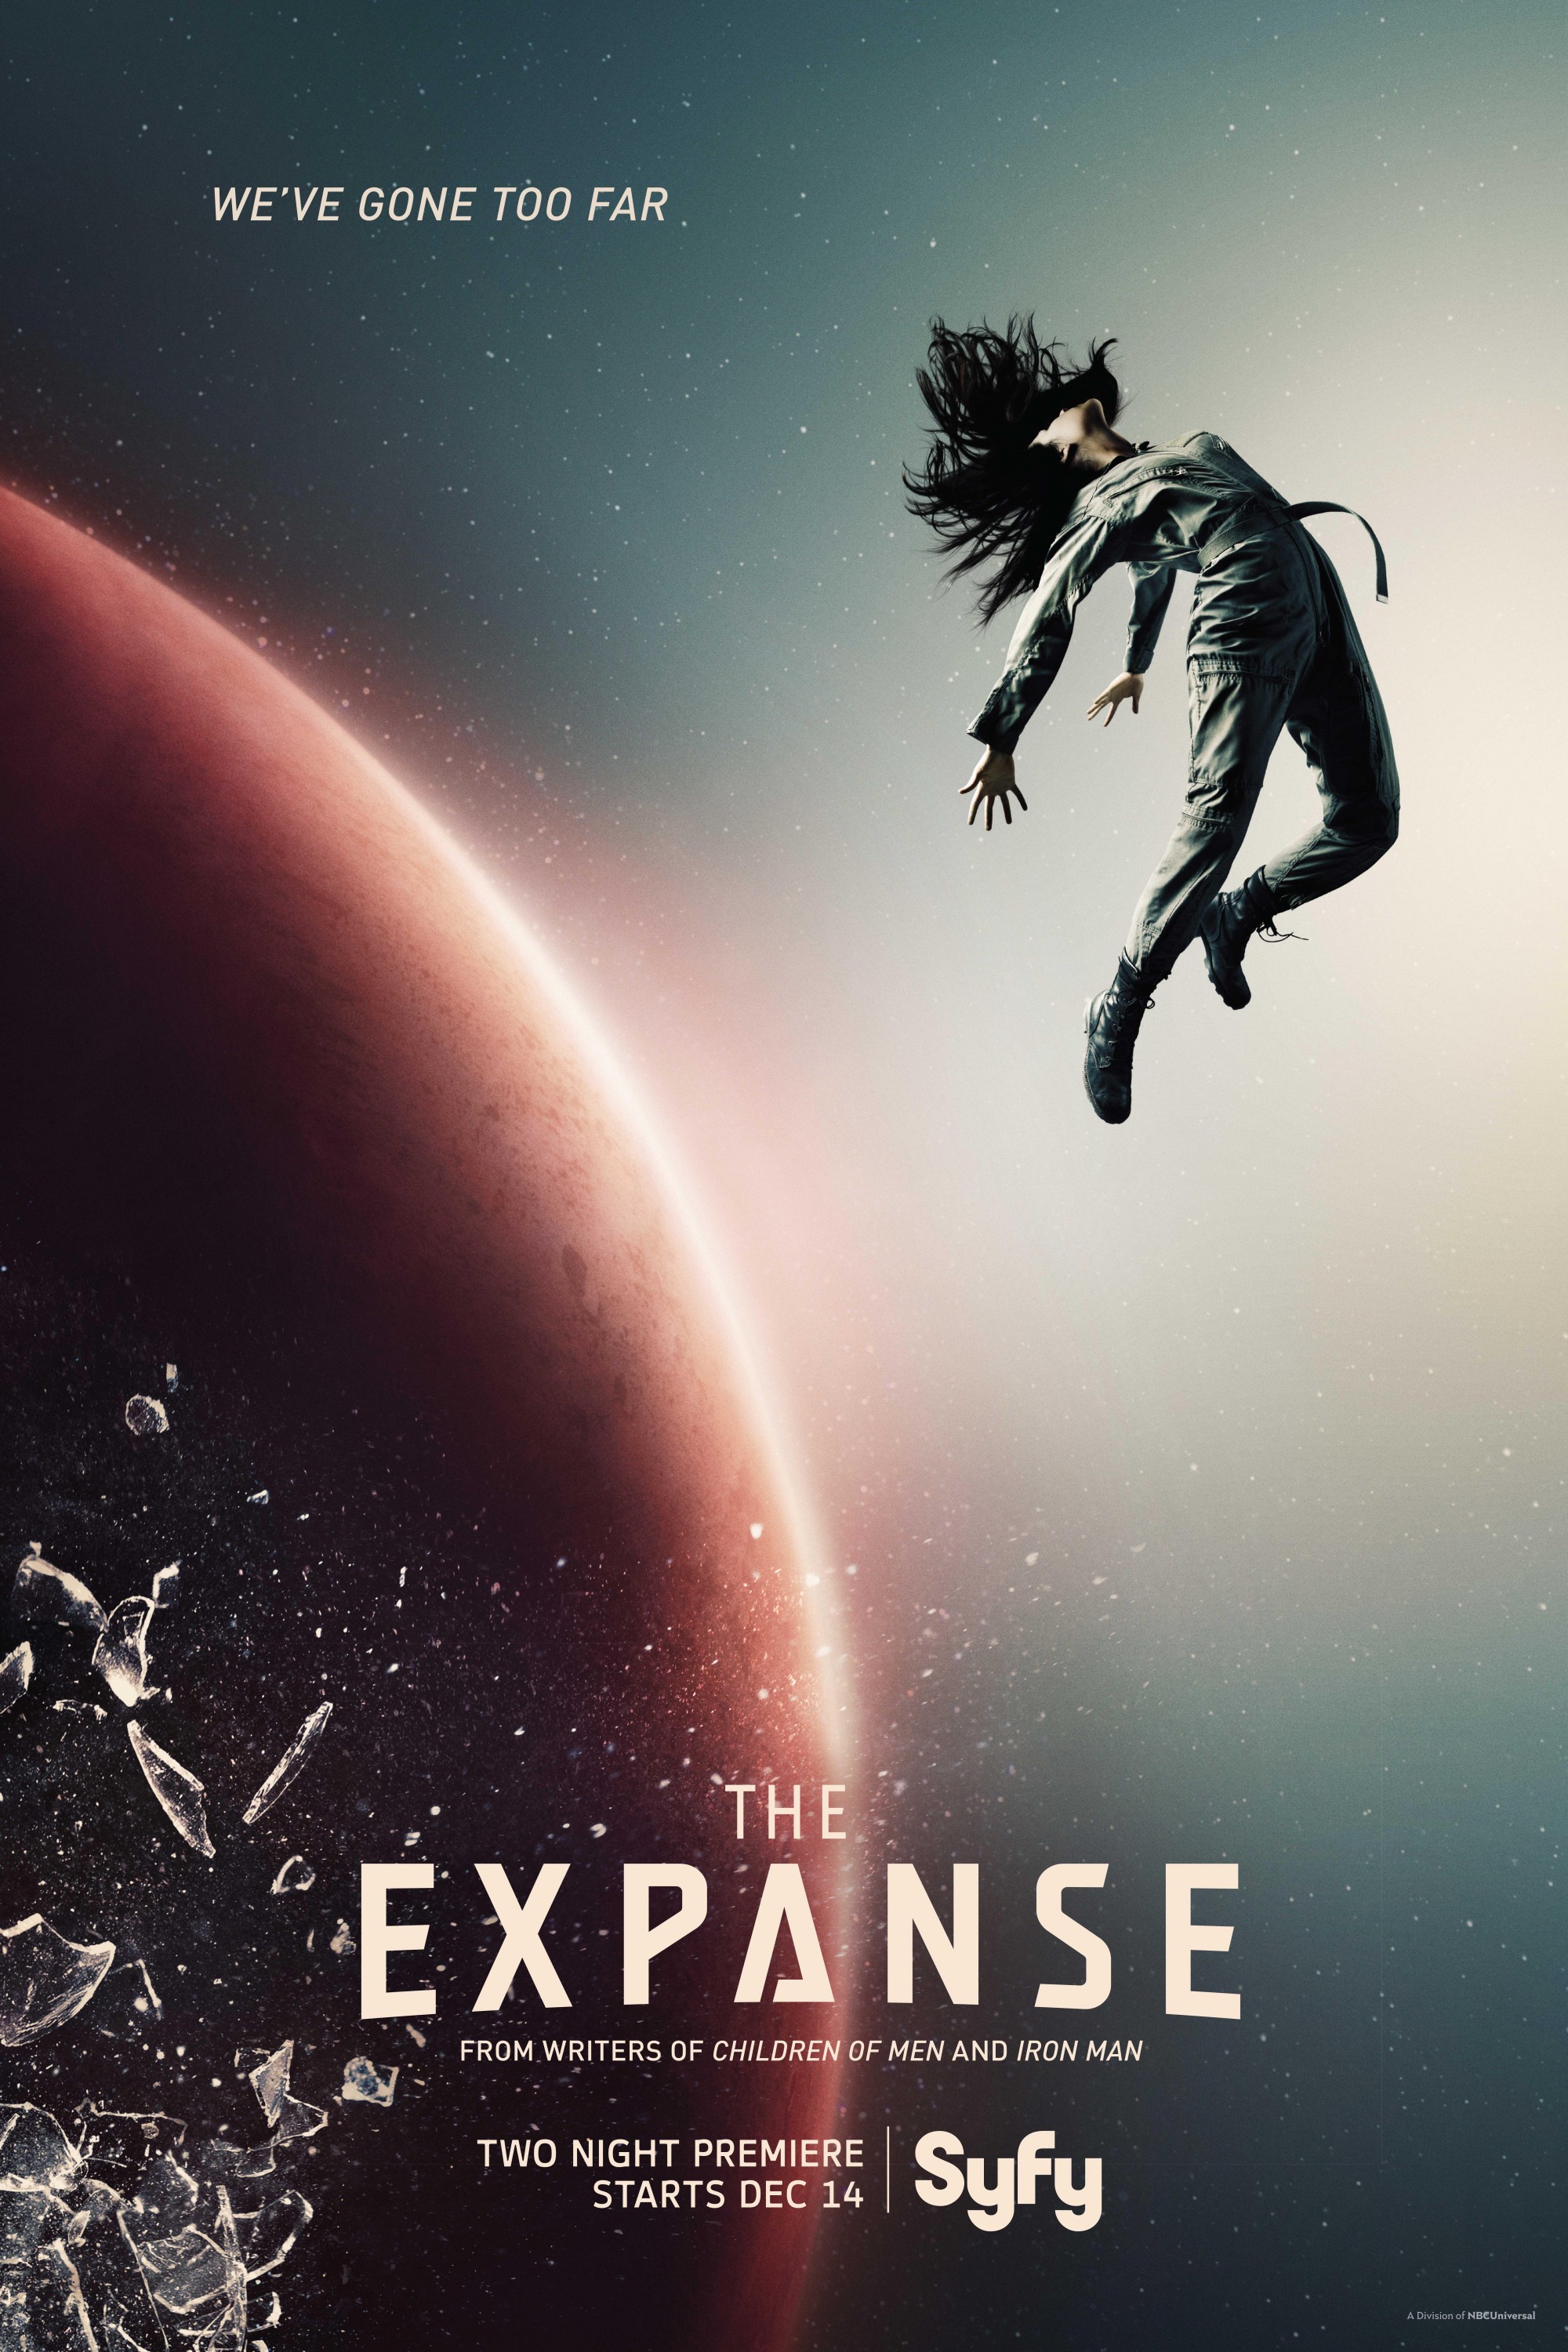 苍穹浩瀚 第一季 The Expanse Season 1 (2015)百度云阿里云下载